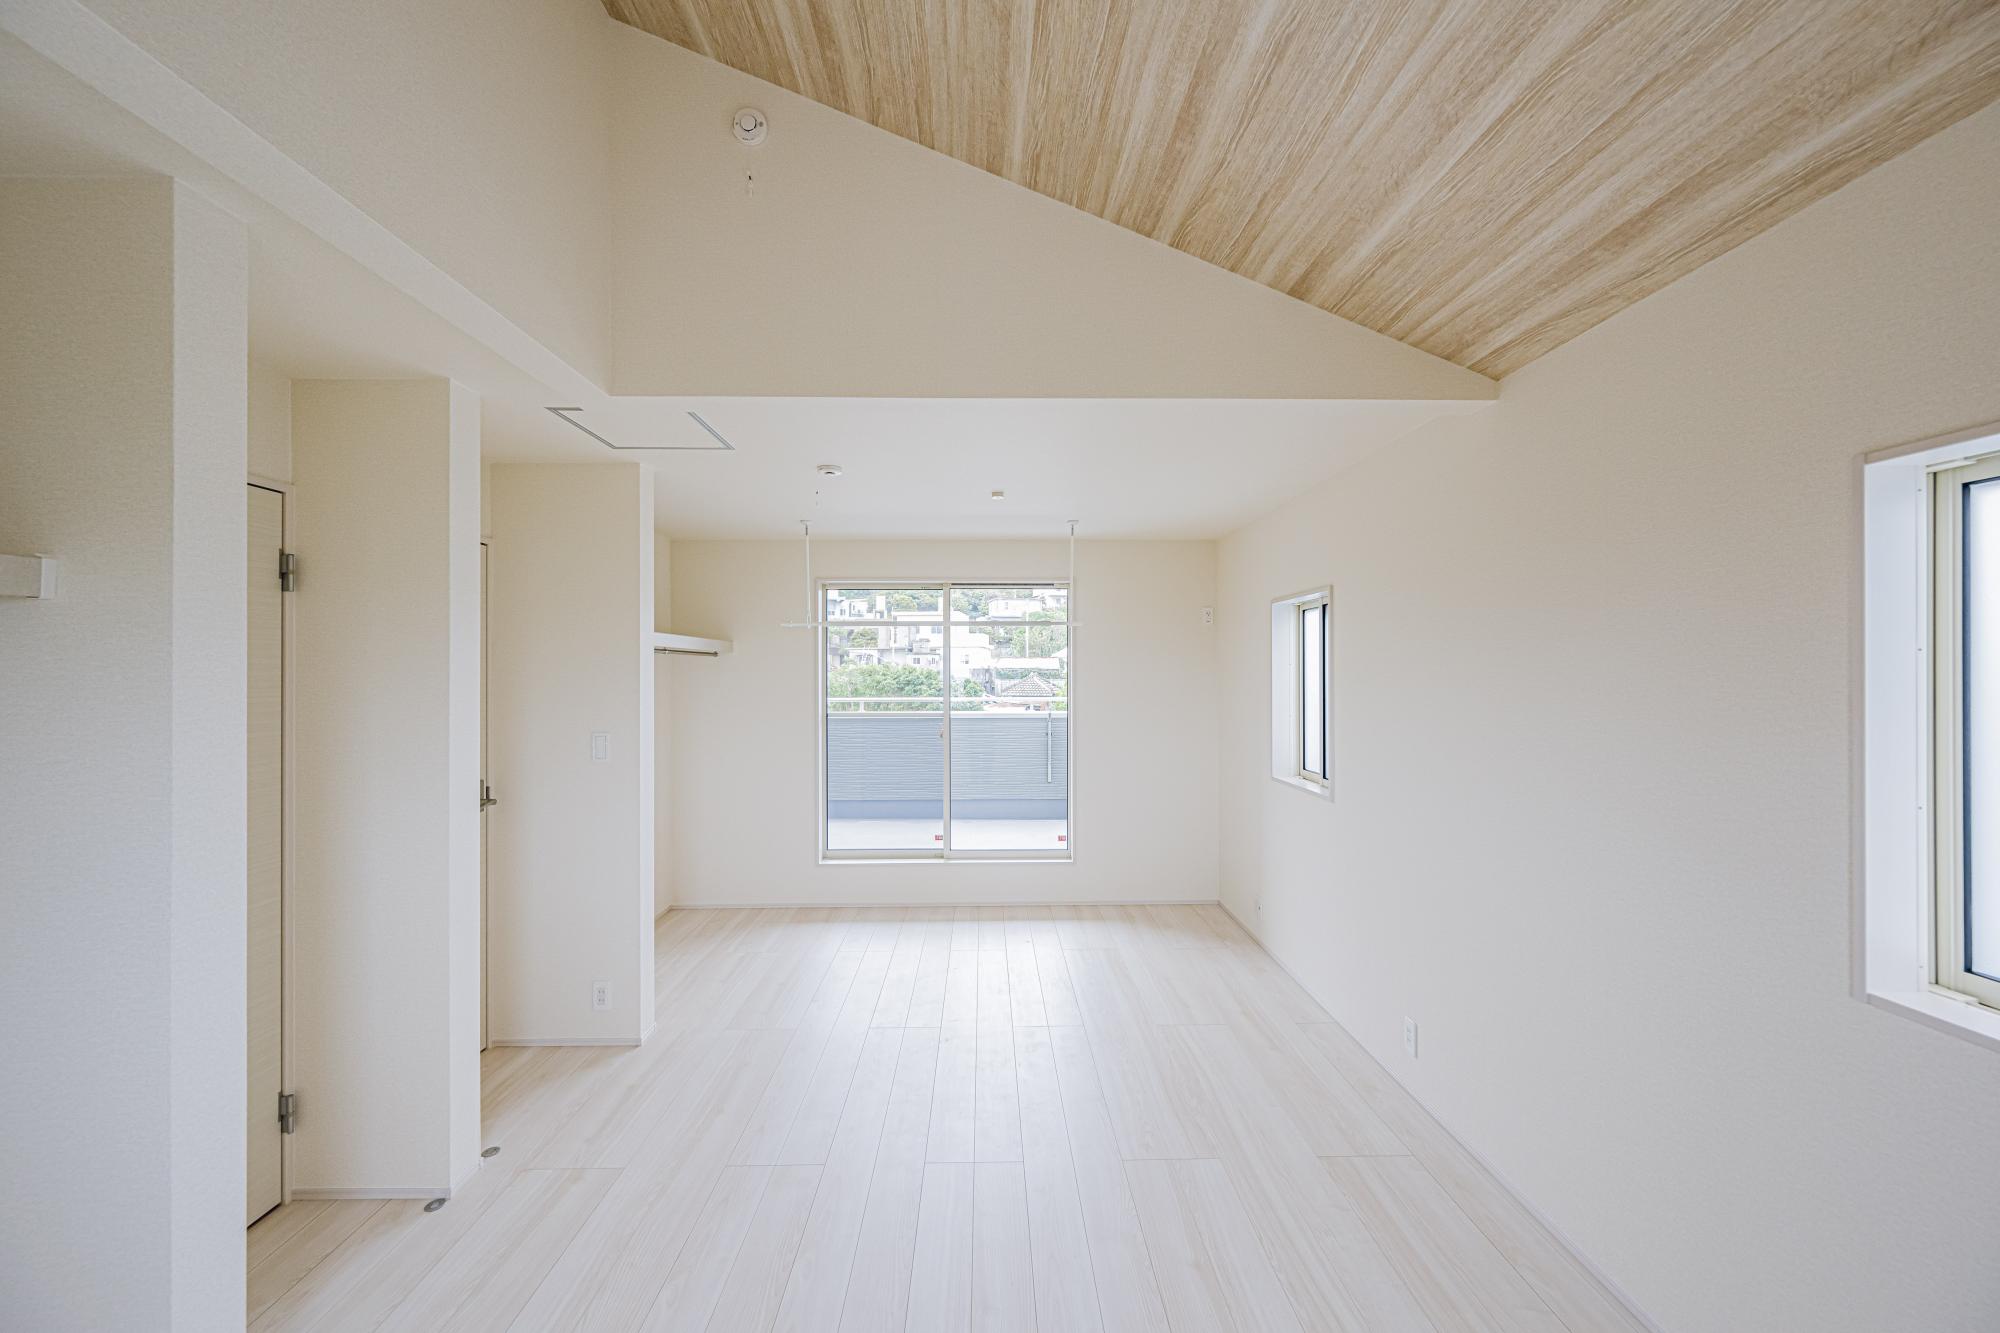 3号棟:フレキシブルルーム10.0帖　勾配天井を用いている部屋は自然と視線が上部に抜けるため、広々とした空間を感じることができます。